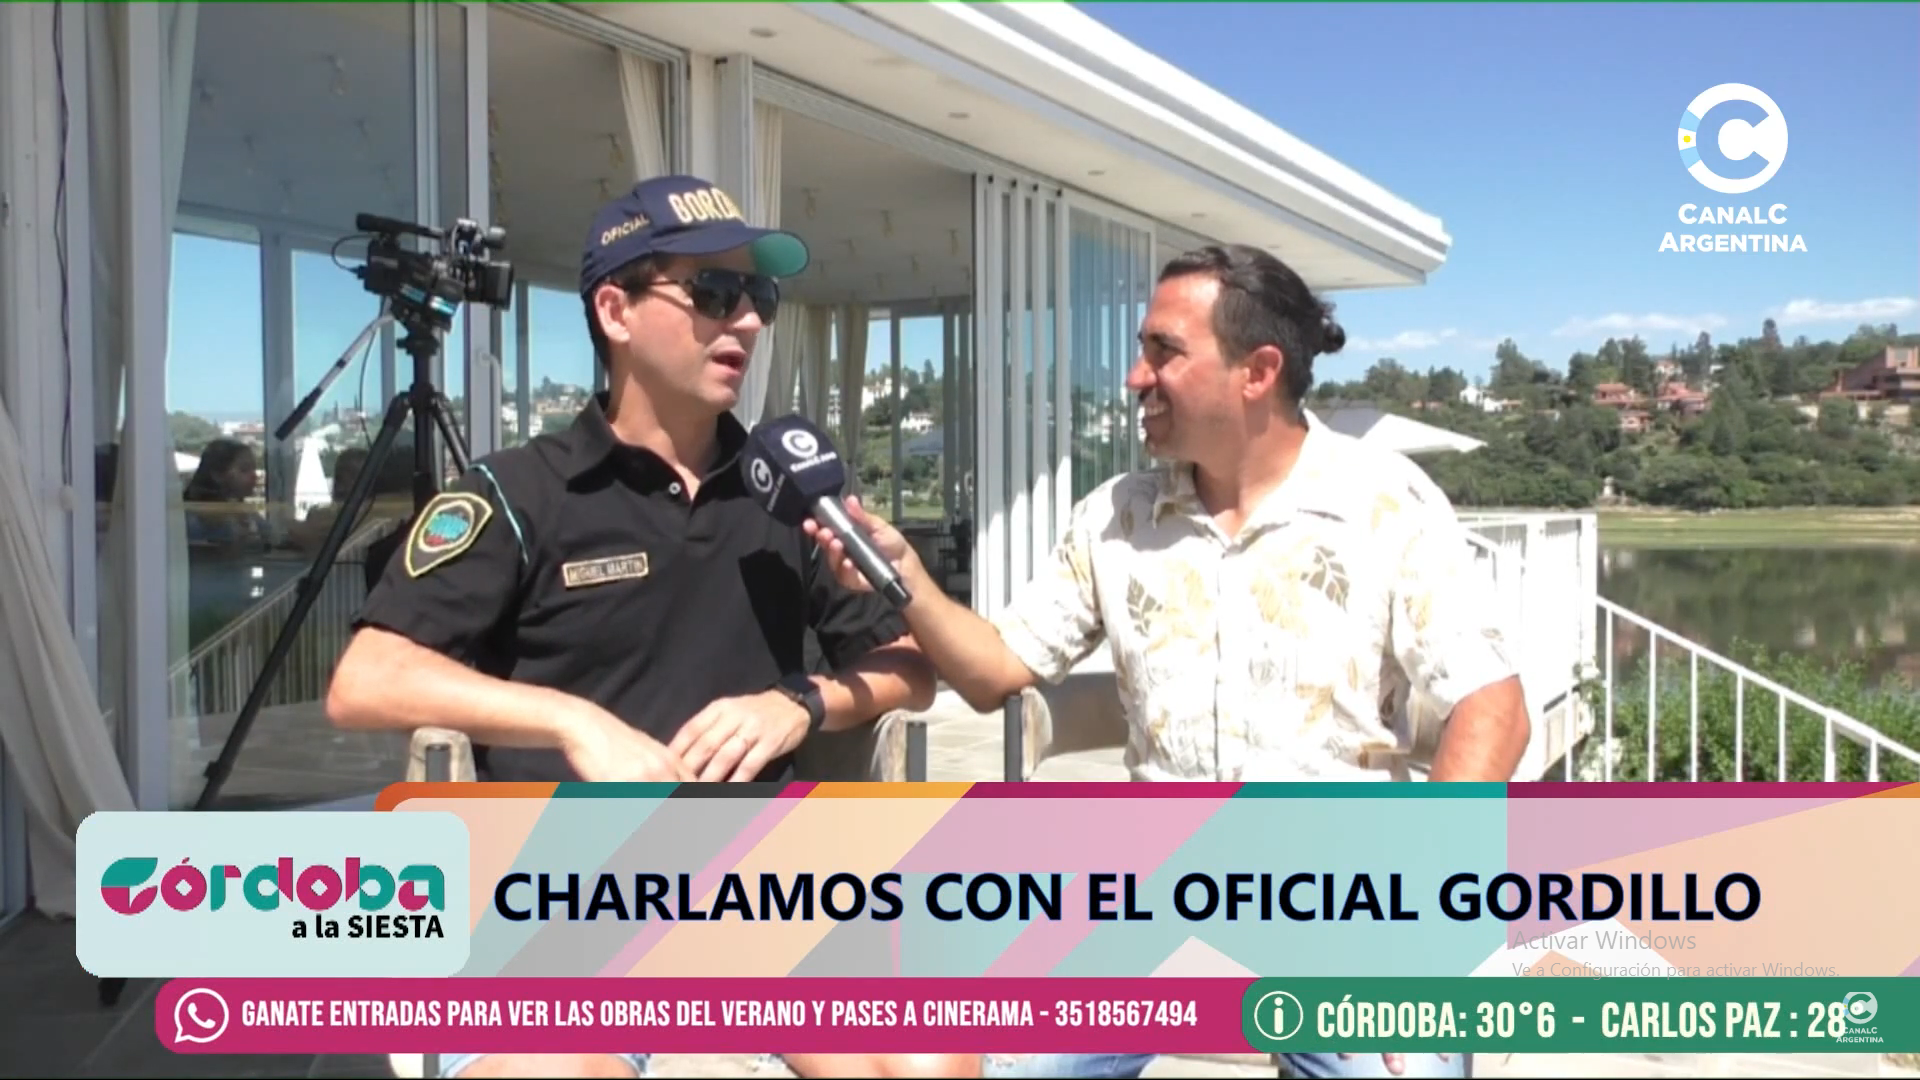 El "Oficial Gordillo" deslumbra en Villa Carlos Paz • Canal C